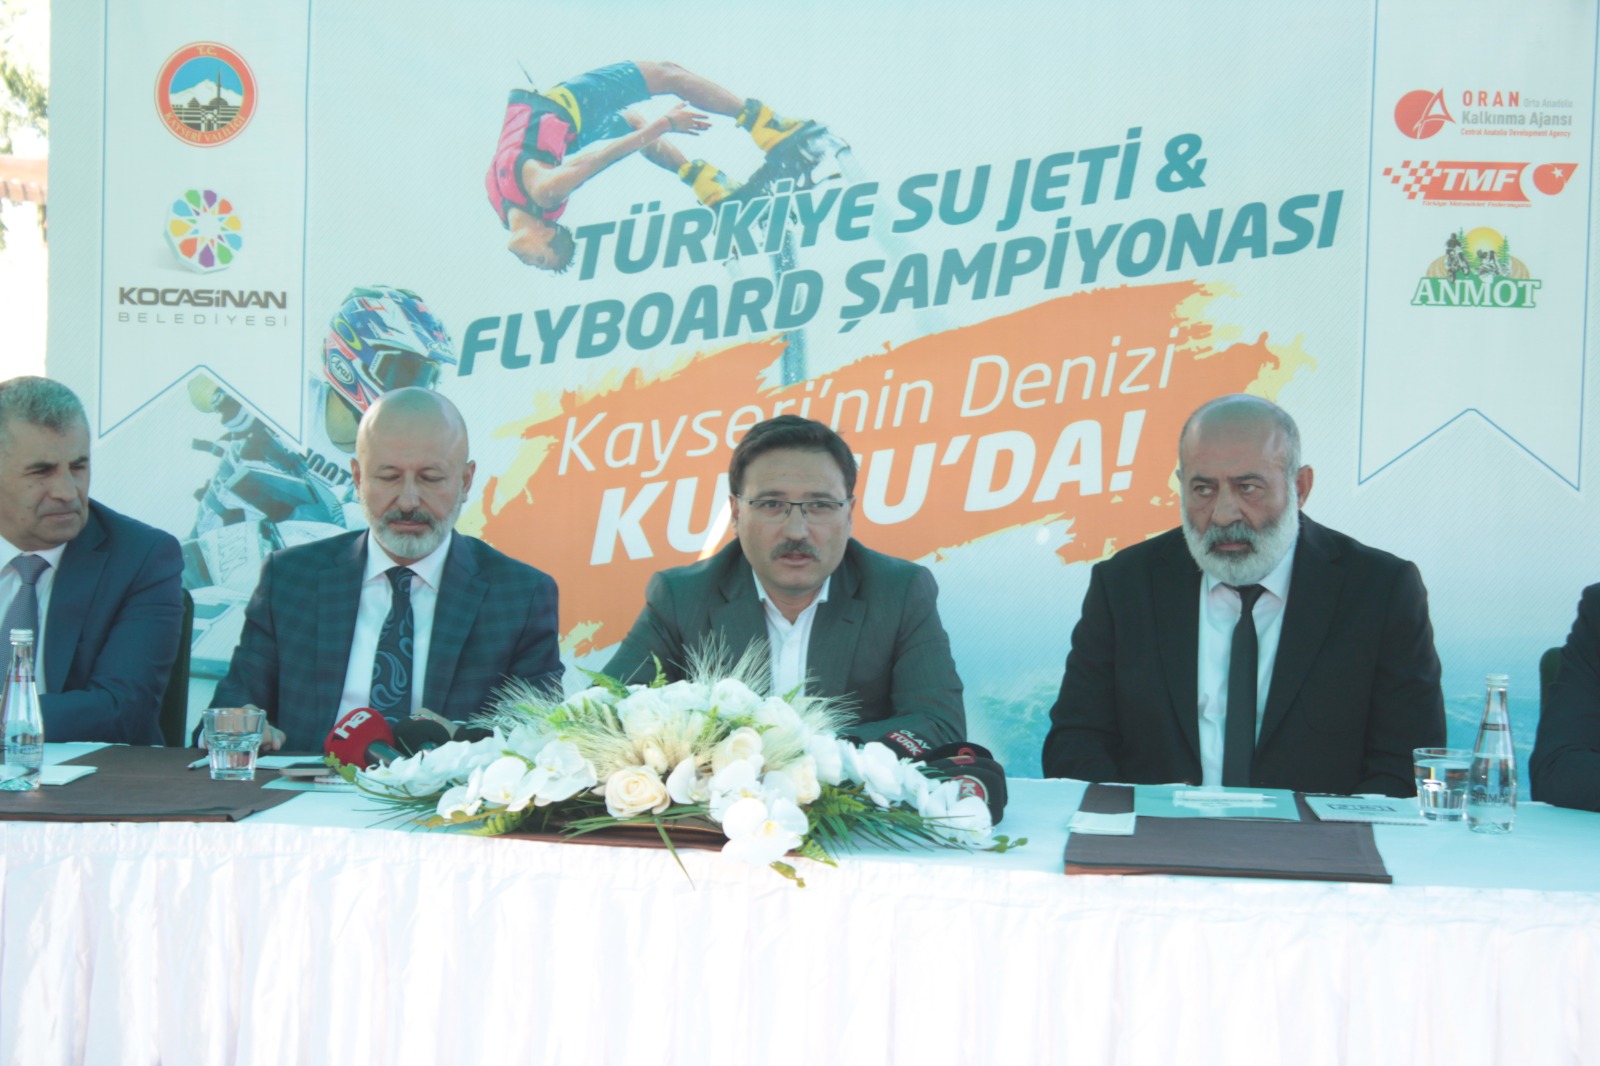 Su Jeti ve Flyboard Şampiyonası Yamula Barajında gerçekleştirilecek